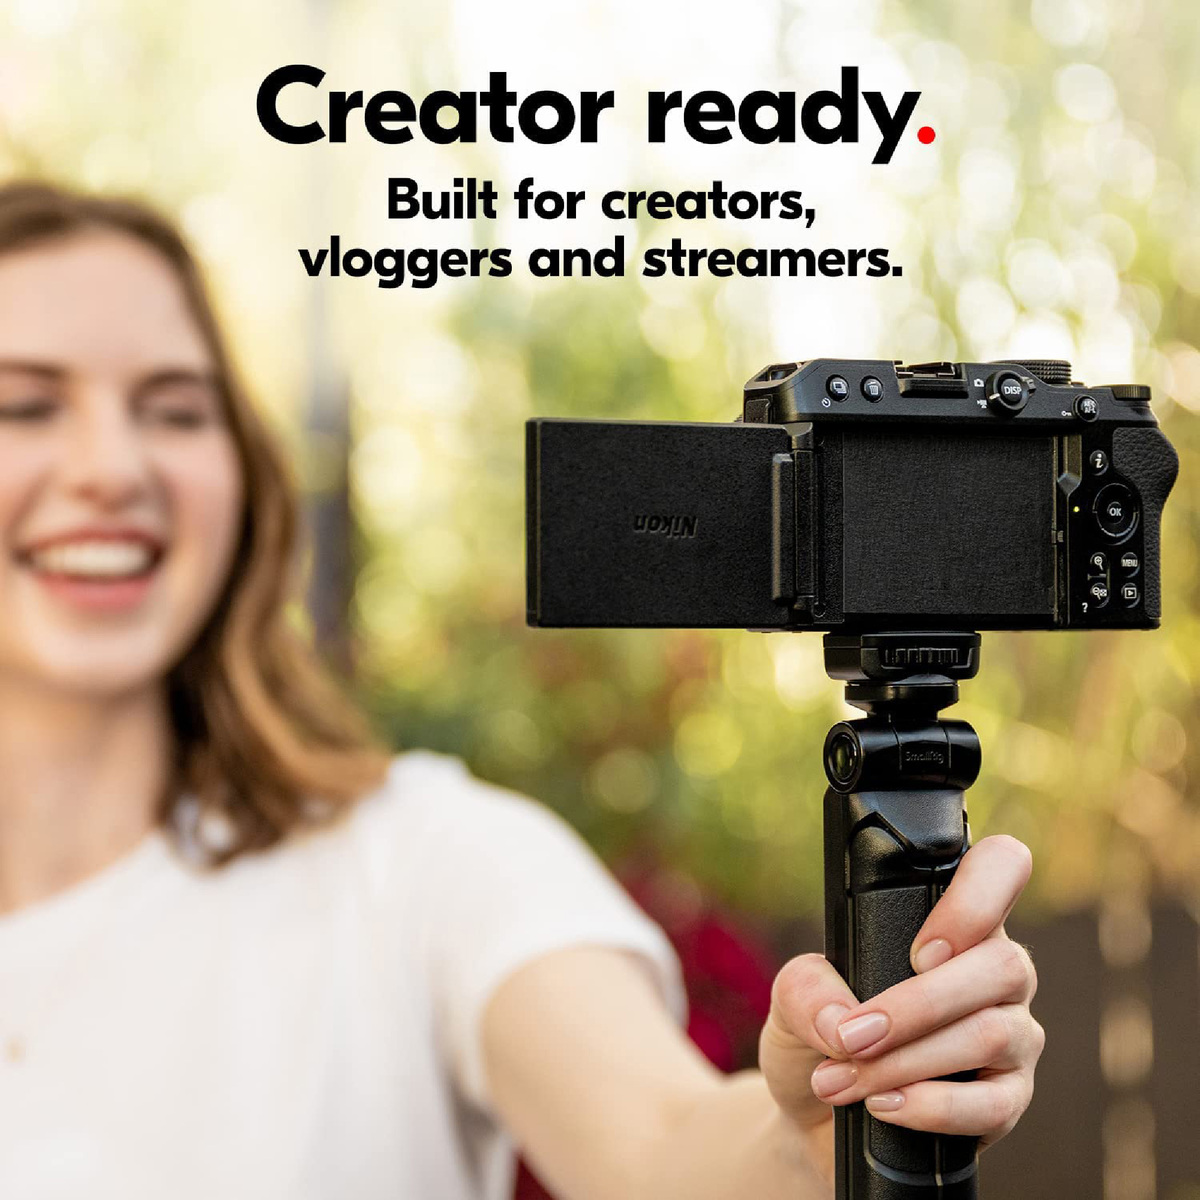 نيكون كاميرا Z30 بدون مرآة مقاس 16-50 مم + مجموعة مدونة فيديو